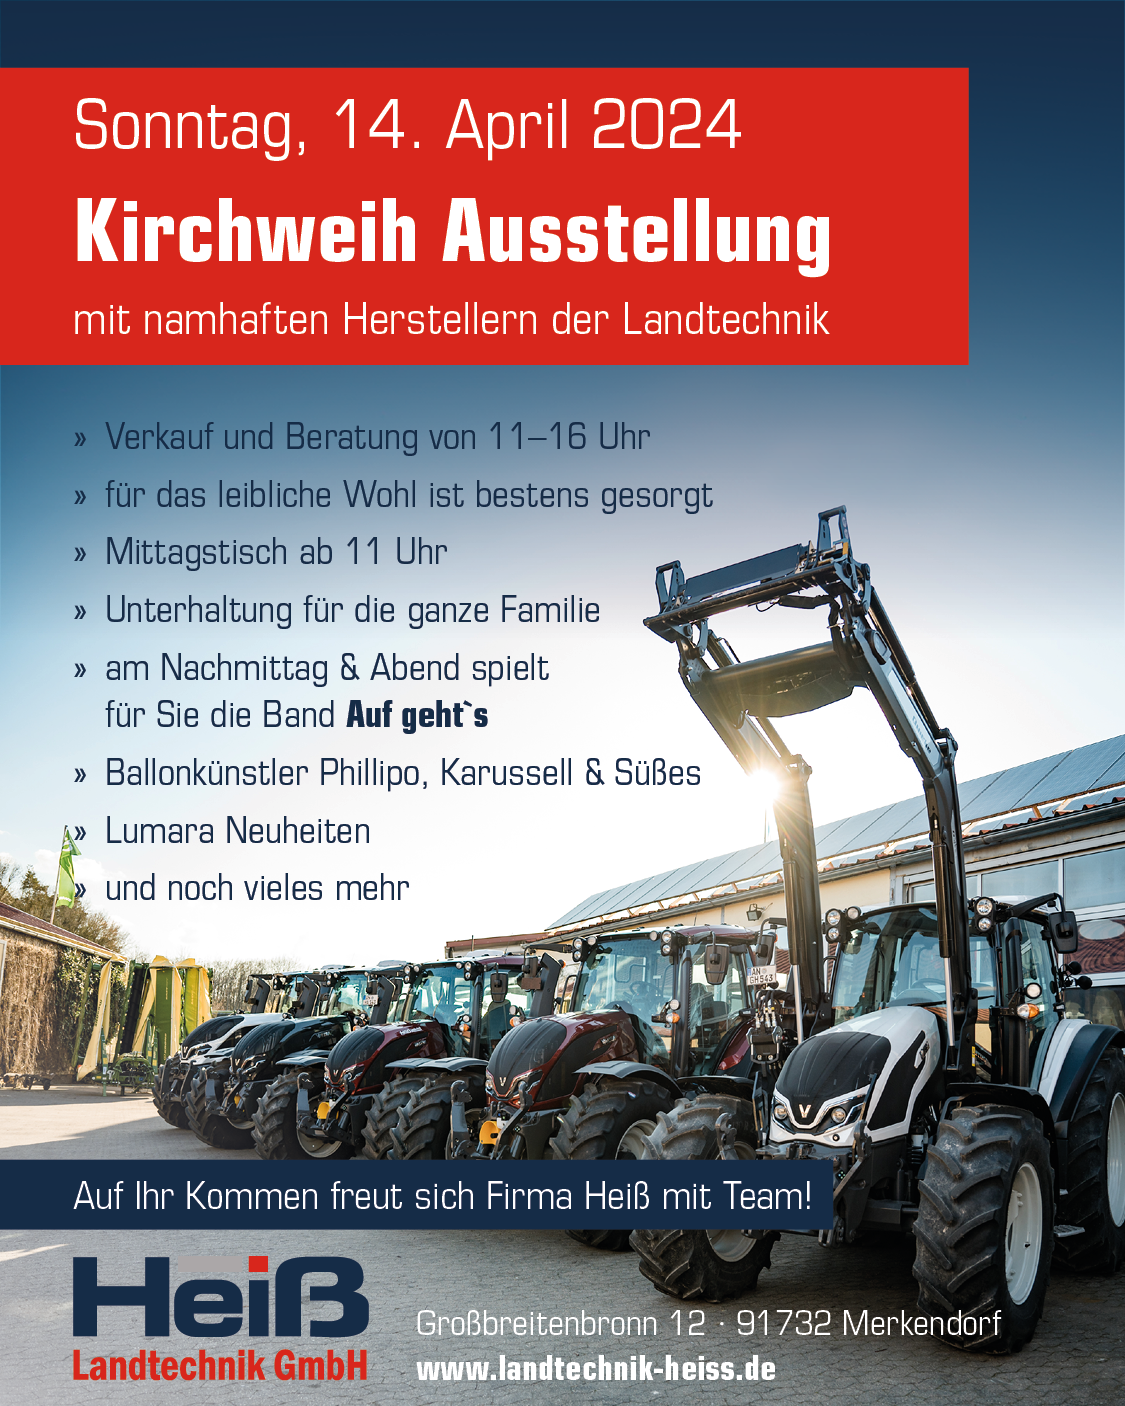 Kirchweih Ausstellung mit Landtechnik Ausstellung in Großbreitenbronn